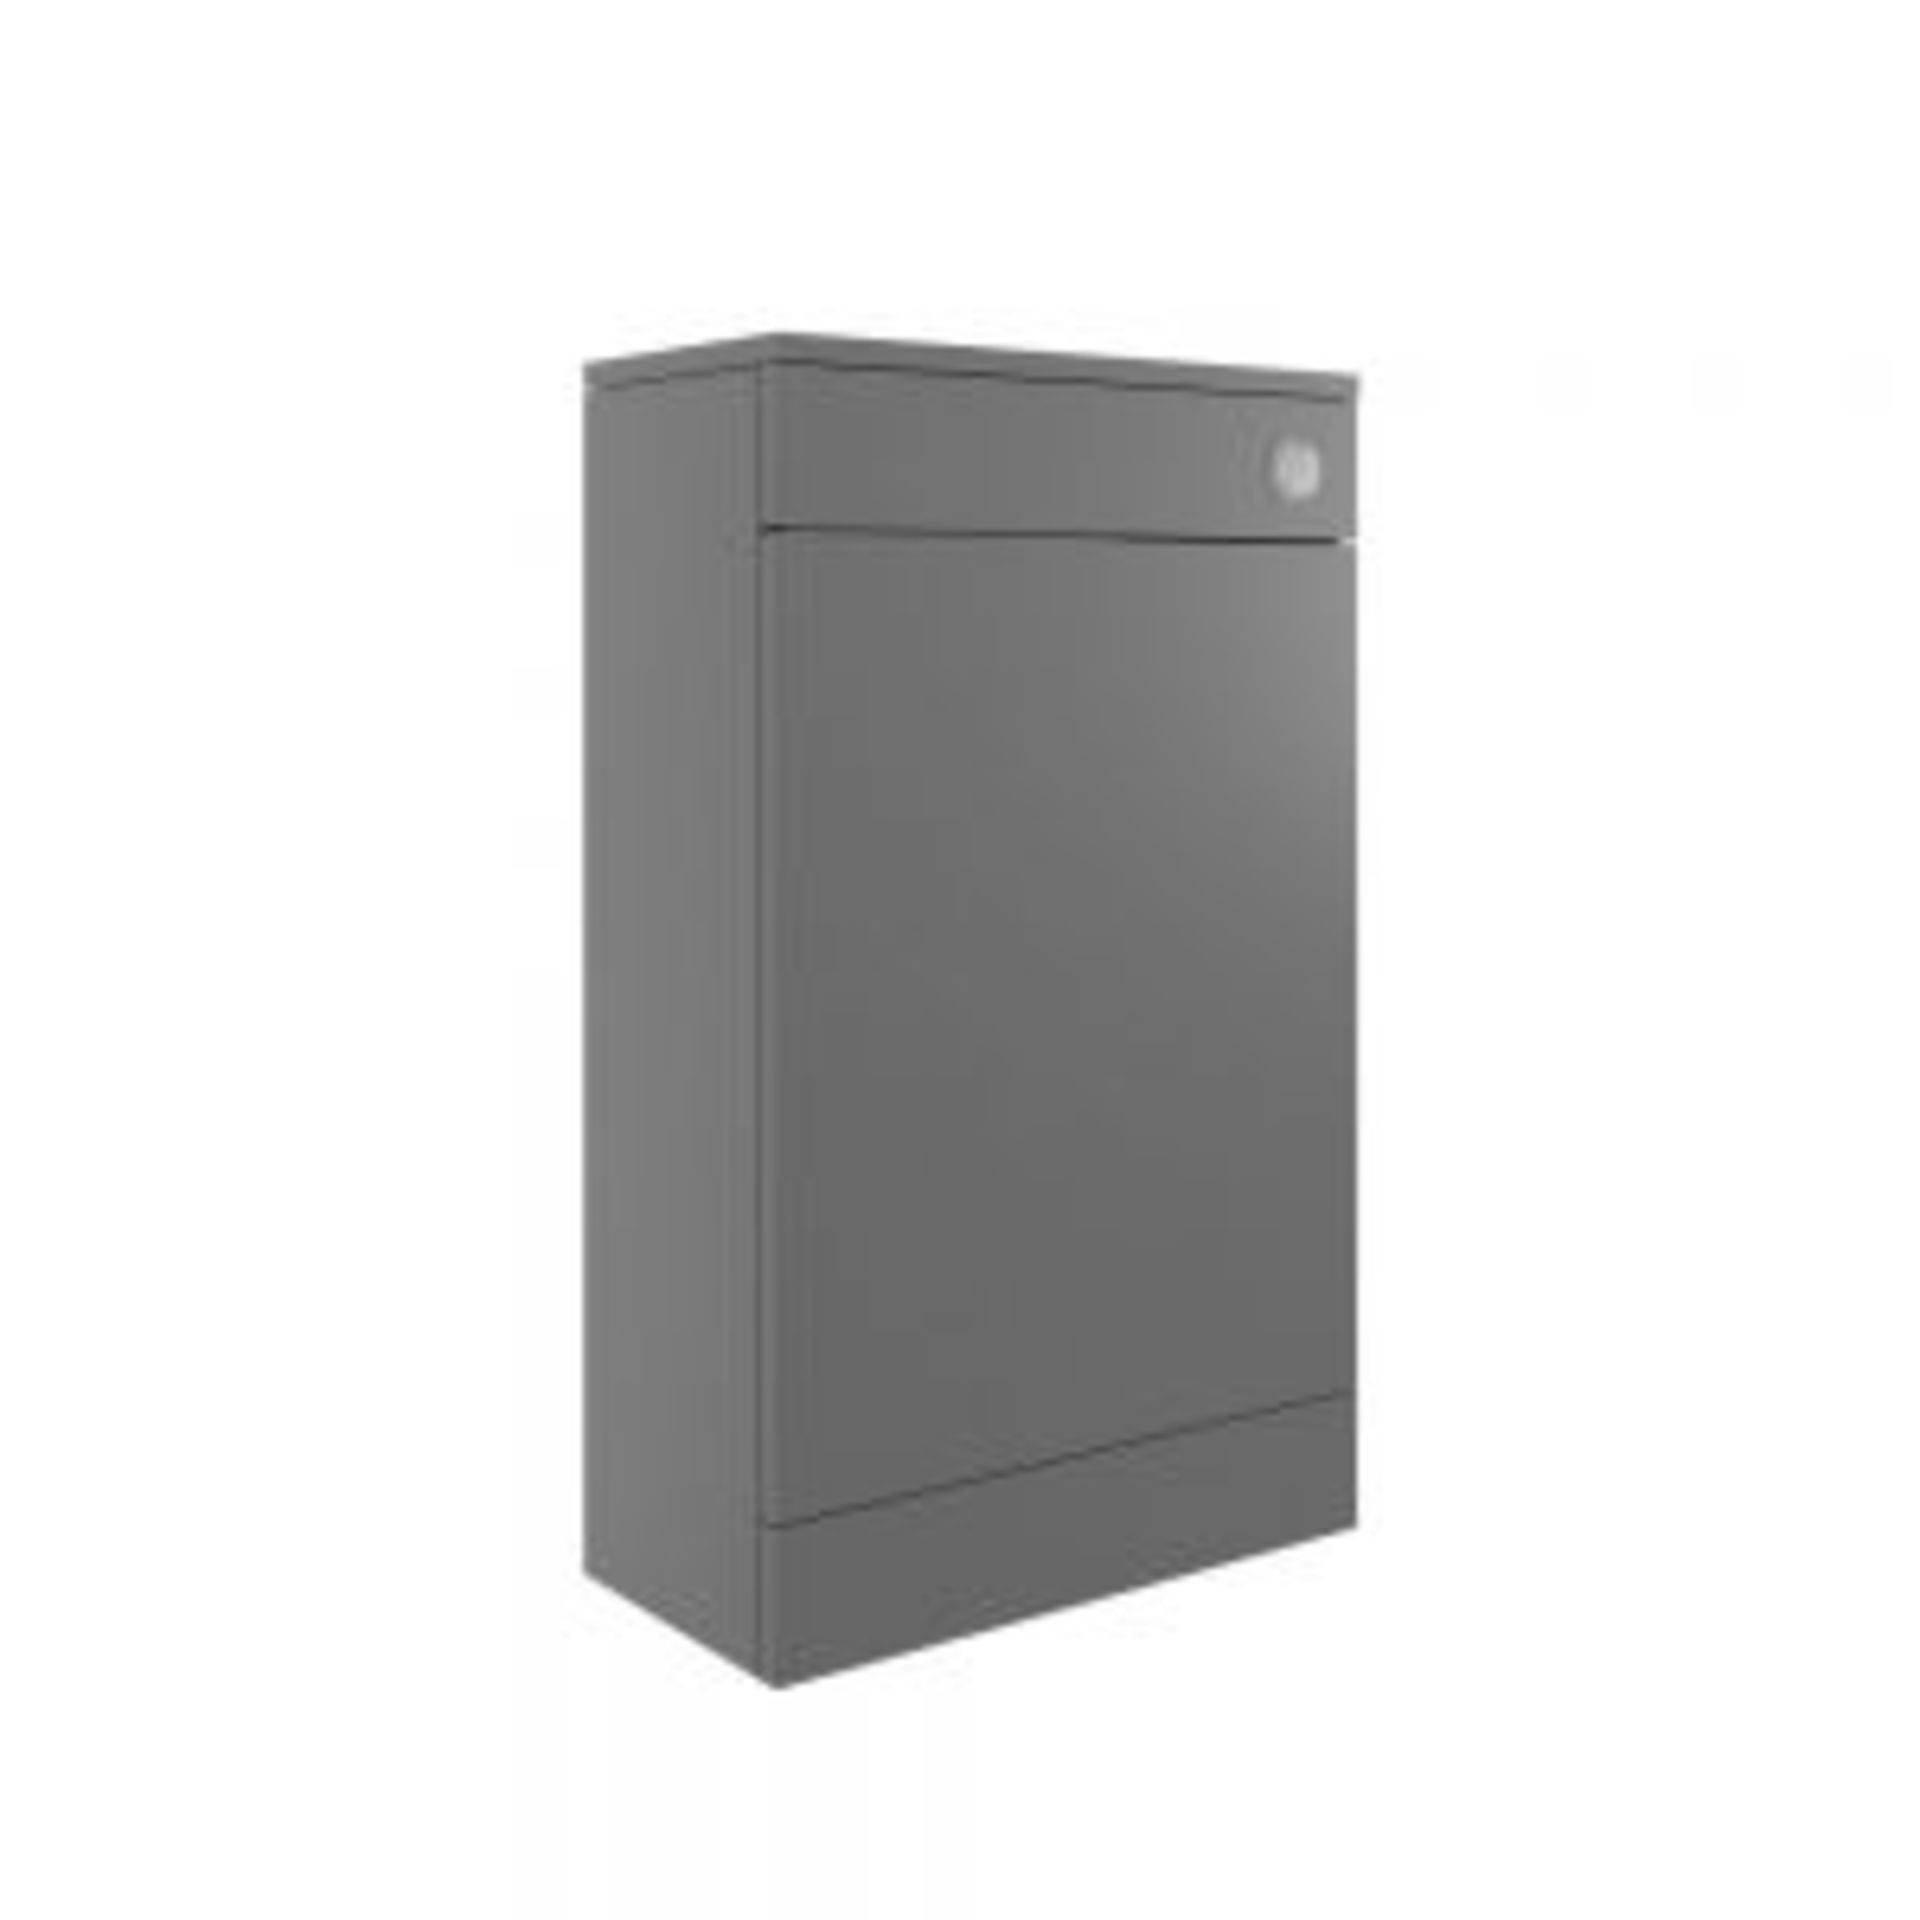 (AX30) New Morina Matt Urban Grey WC Furniture Unit DIFT1844. RRP £199.00. 500 x 252 x 830mm (WxDxH)